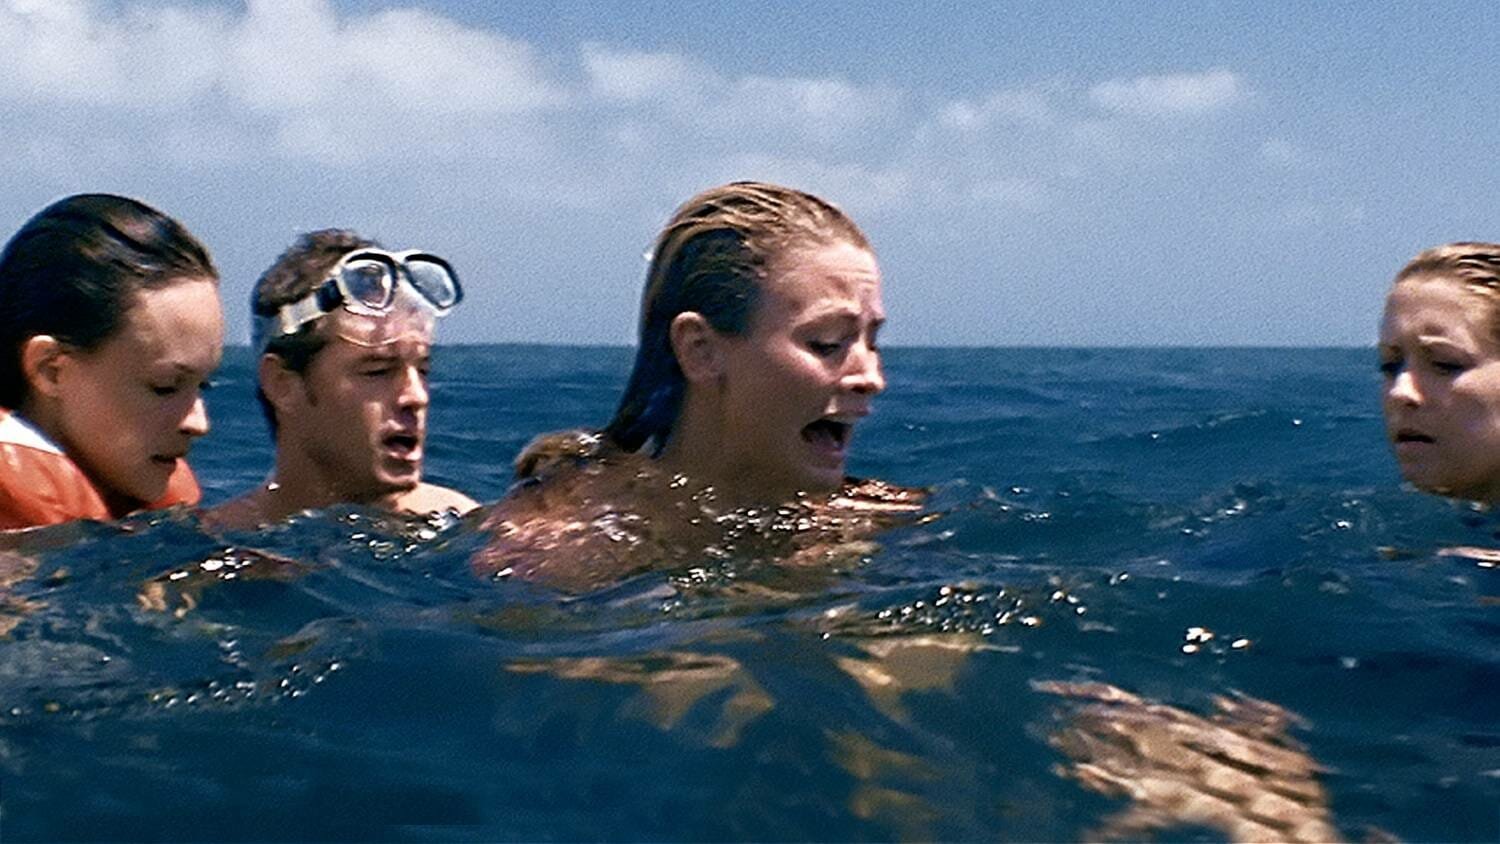 Best Shark Movies: Open water 2- Adrift (2006)